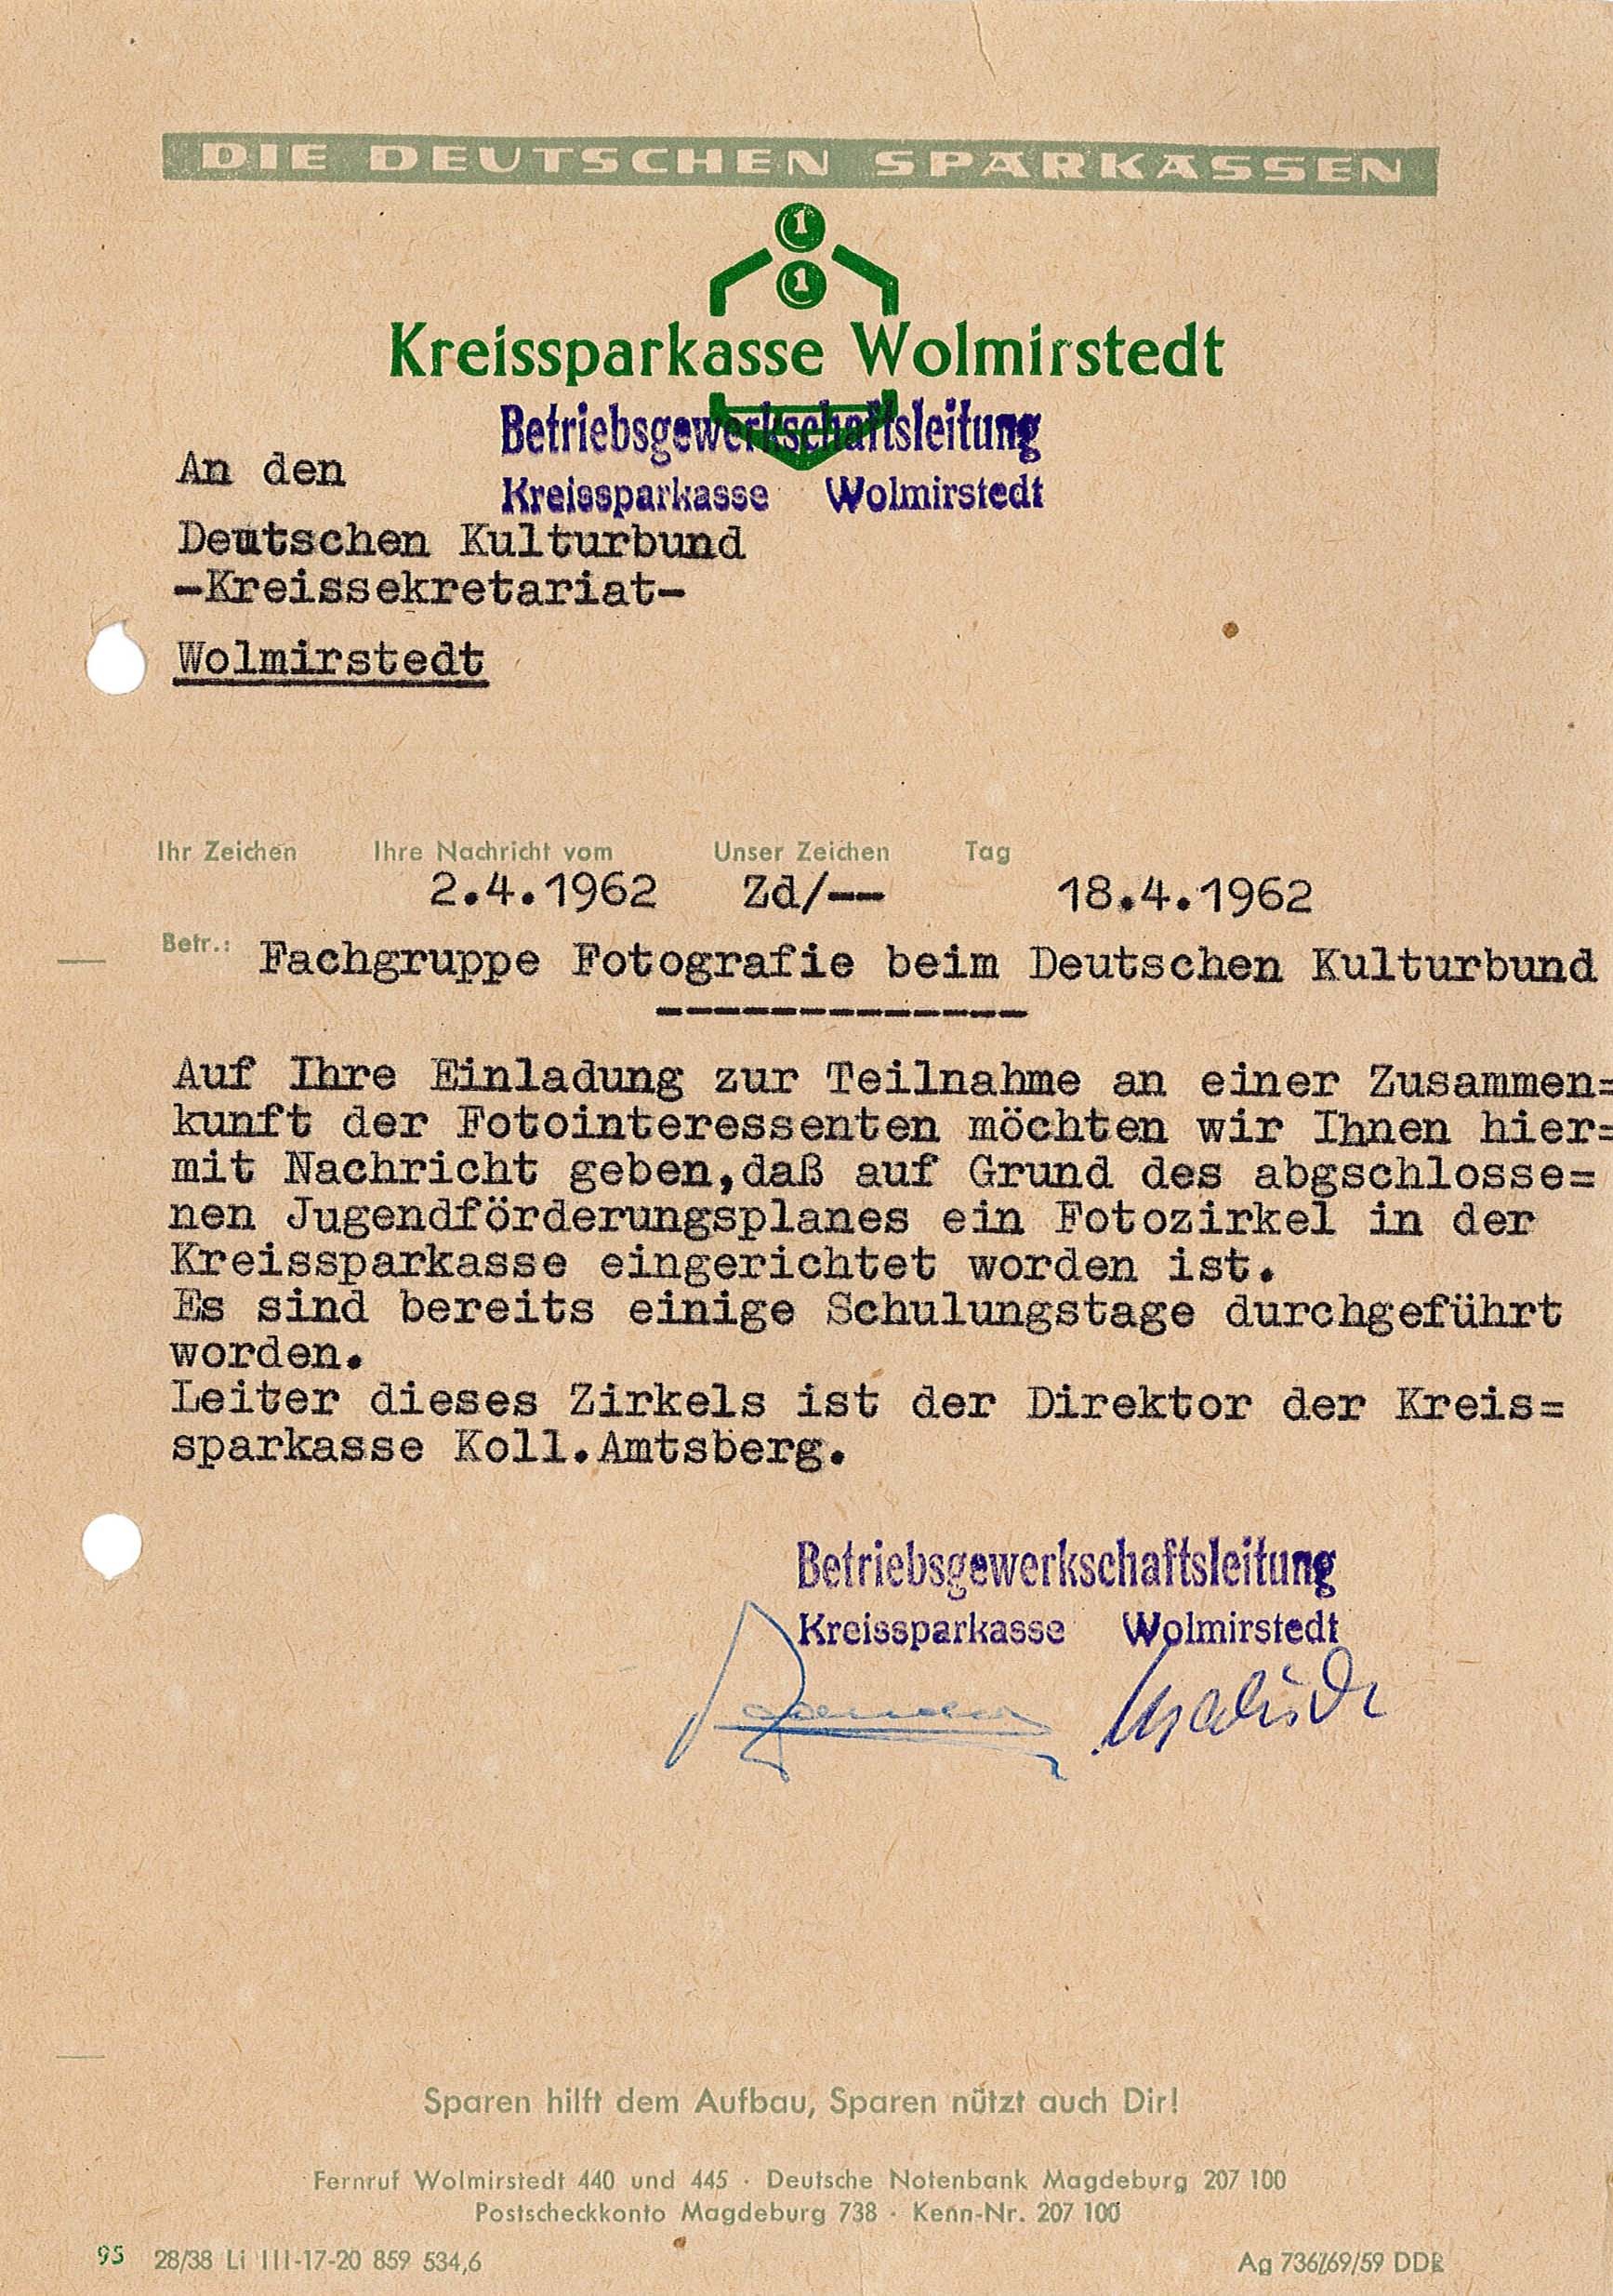 Schreiben der Kreissparkasse Wolmirstedt an das Kreissekretariat des Deutschen Kulturbund Wolmirstedt, 18. April 1962 (Museum Wolmirstedt RR-F)